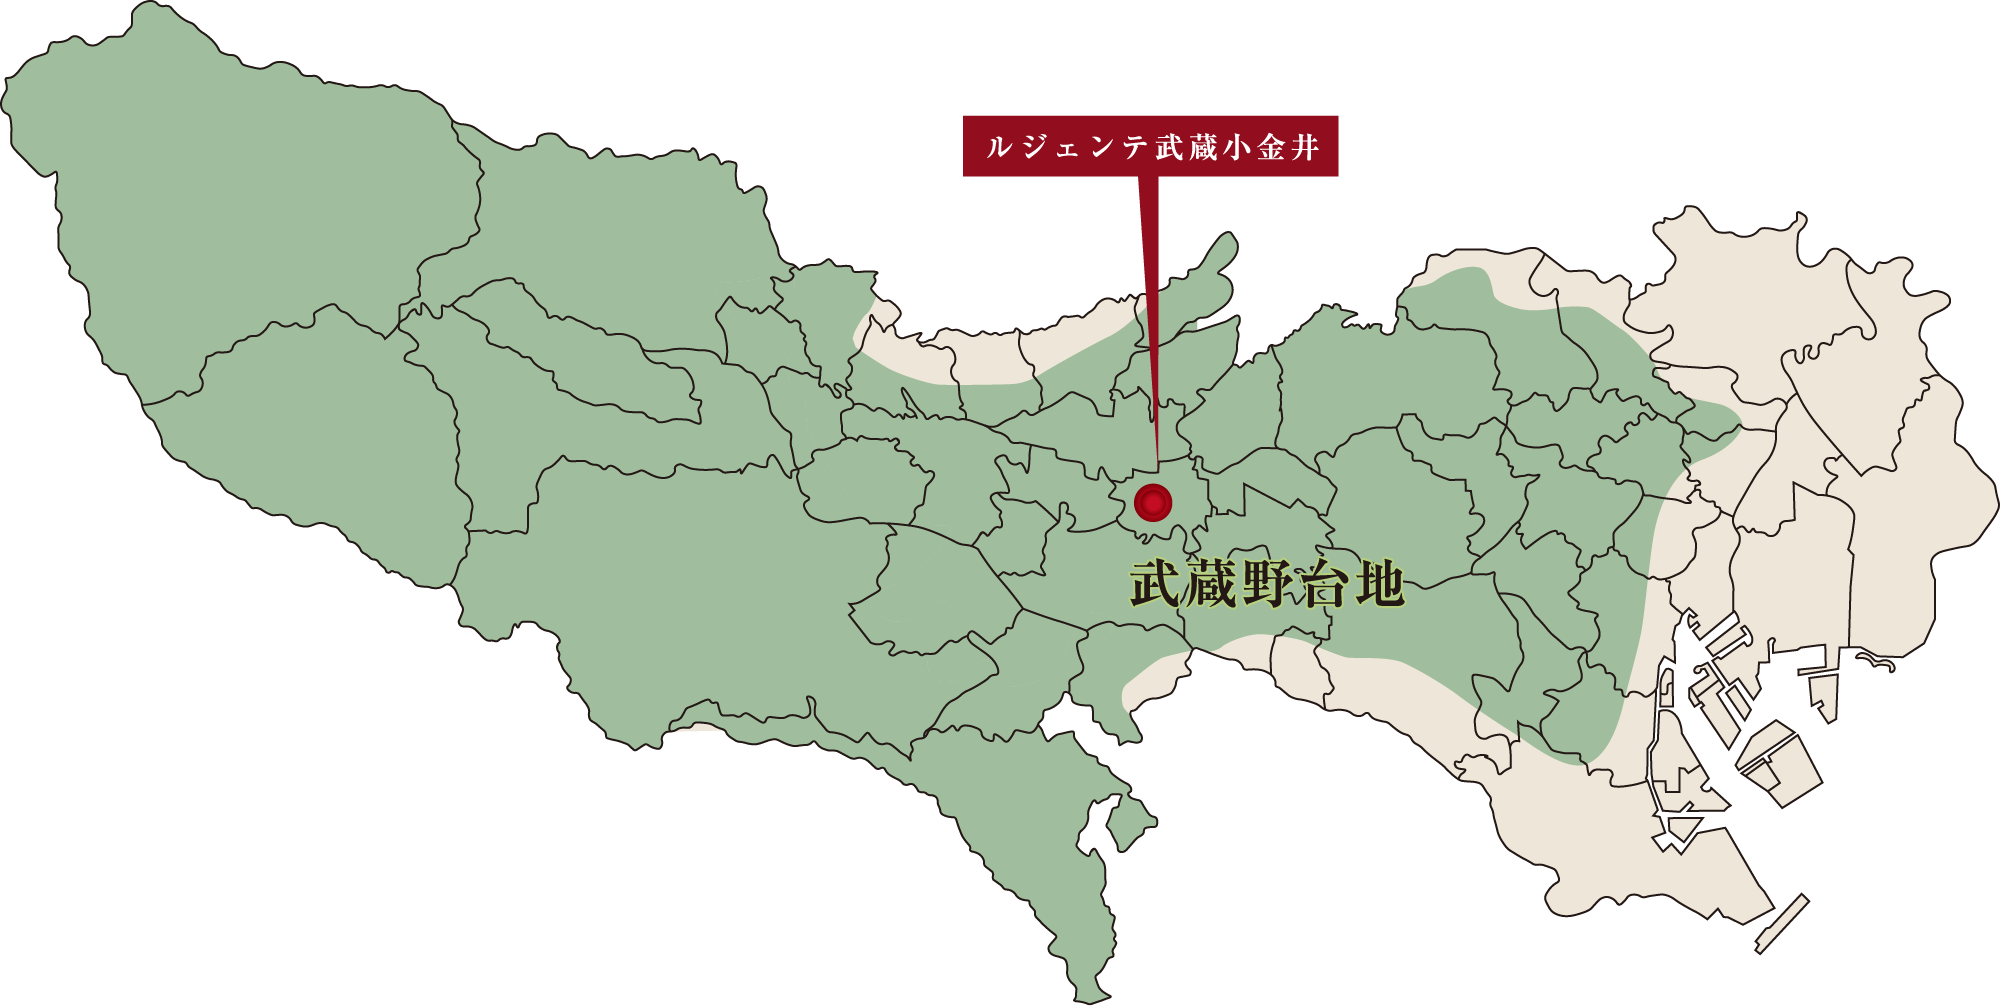 武蔵野台地地盤概念図